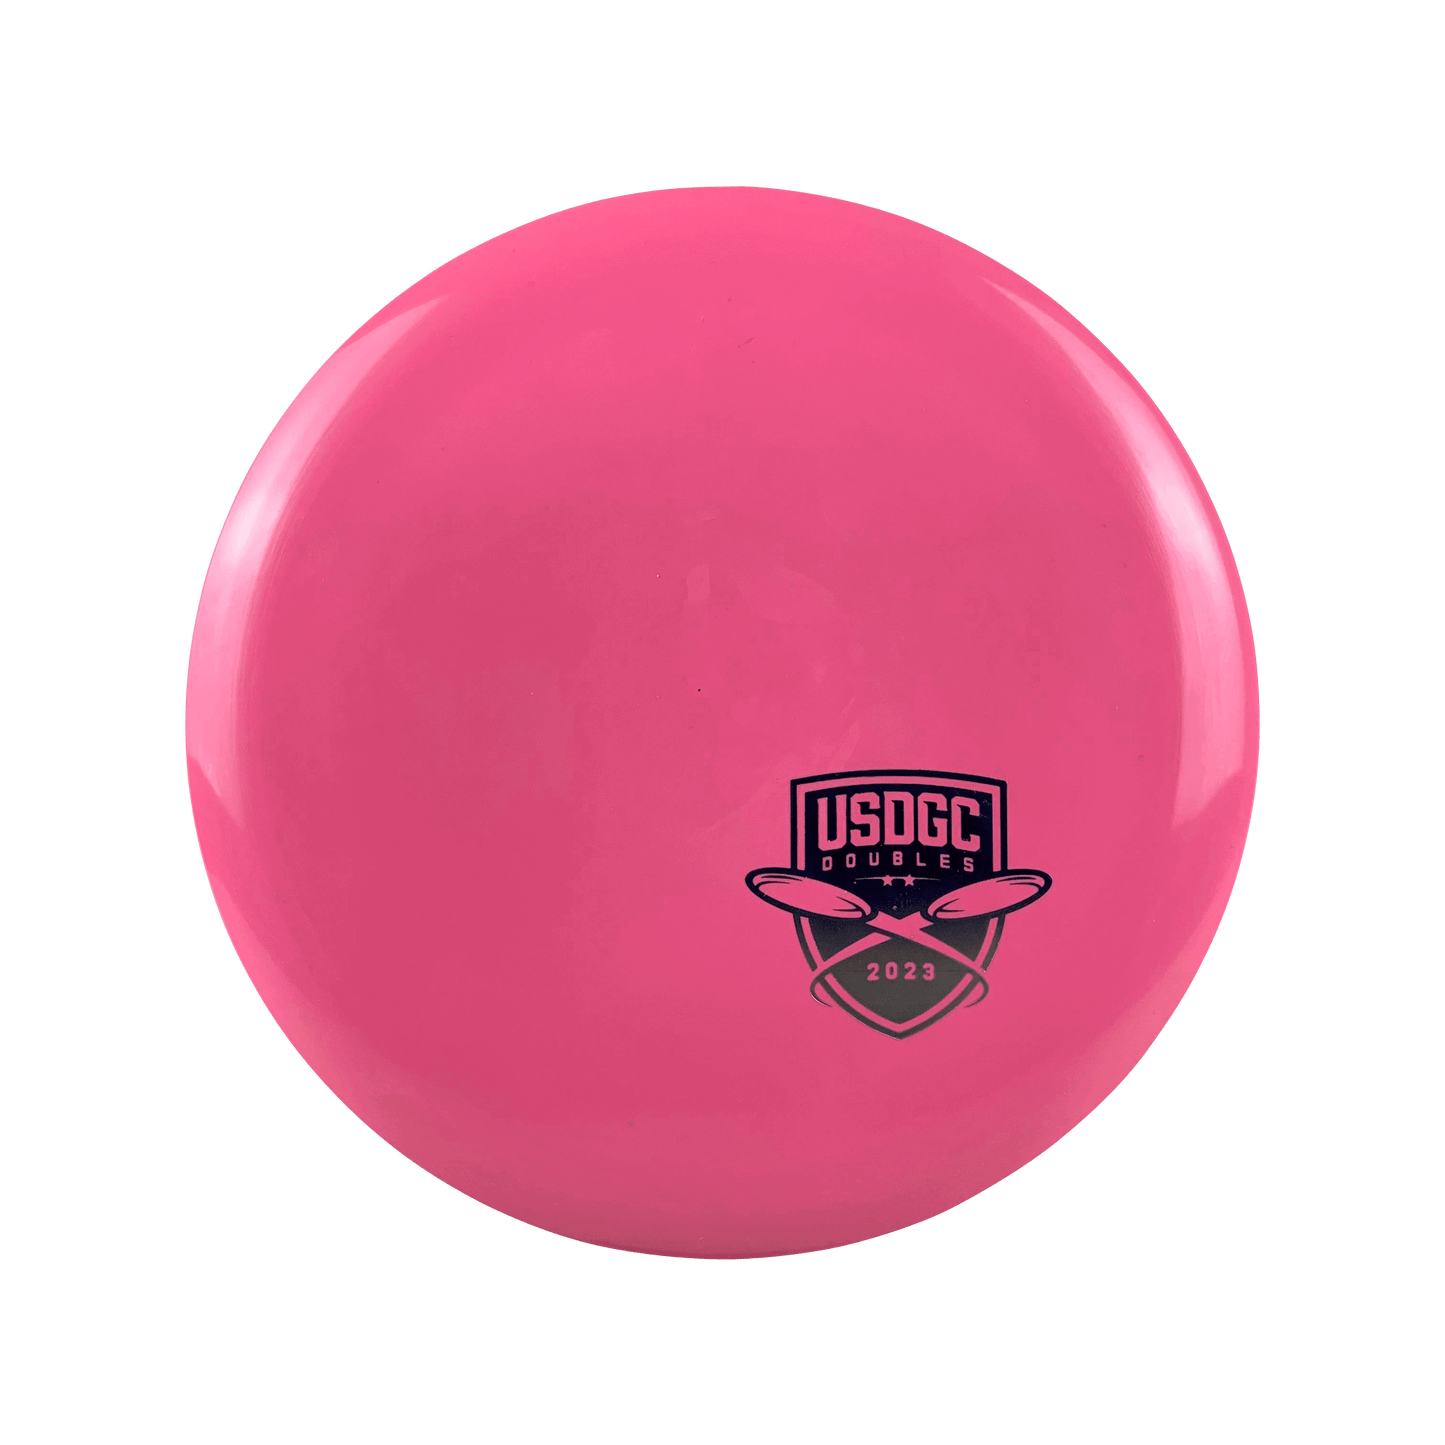 Star Roadrunner - USDGC Doubles Disc Innova pink 170 